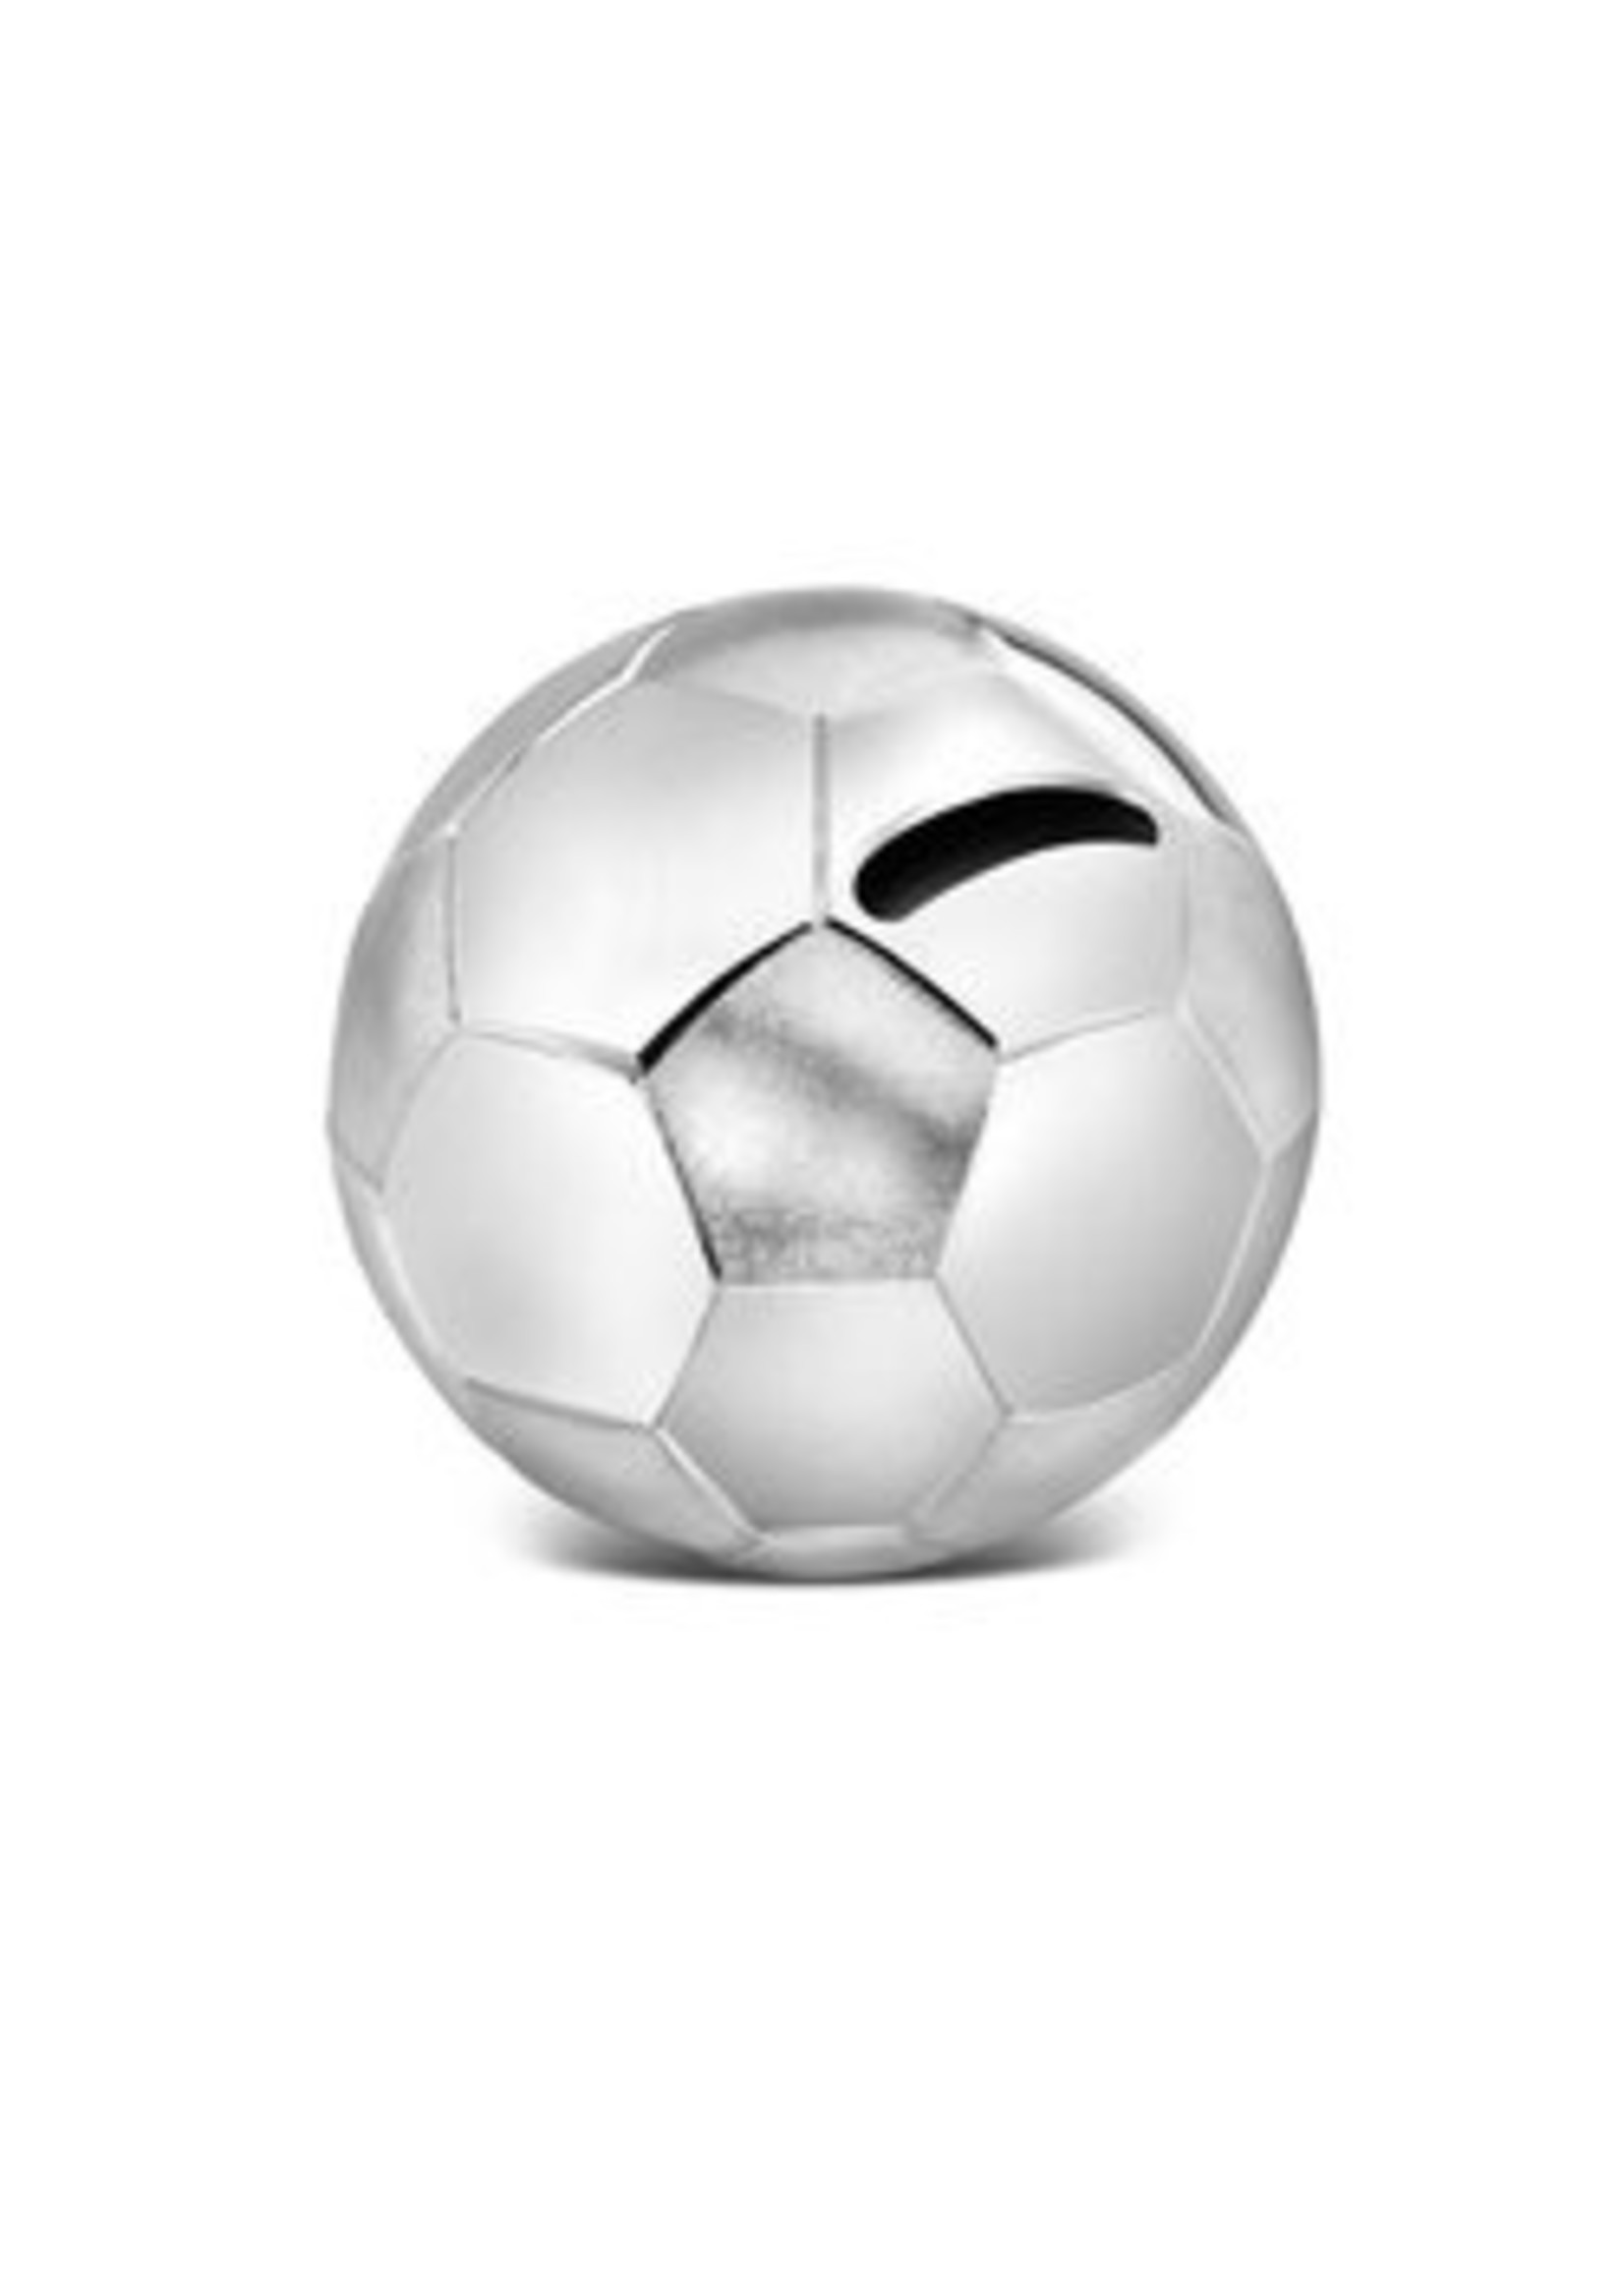 Zilverstad Zilverstad - Spaarpot Voetbal 8,5x8,5x8cm zilver kleur